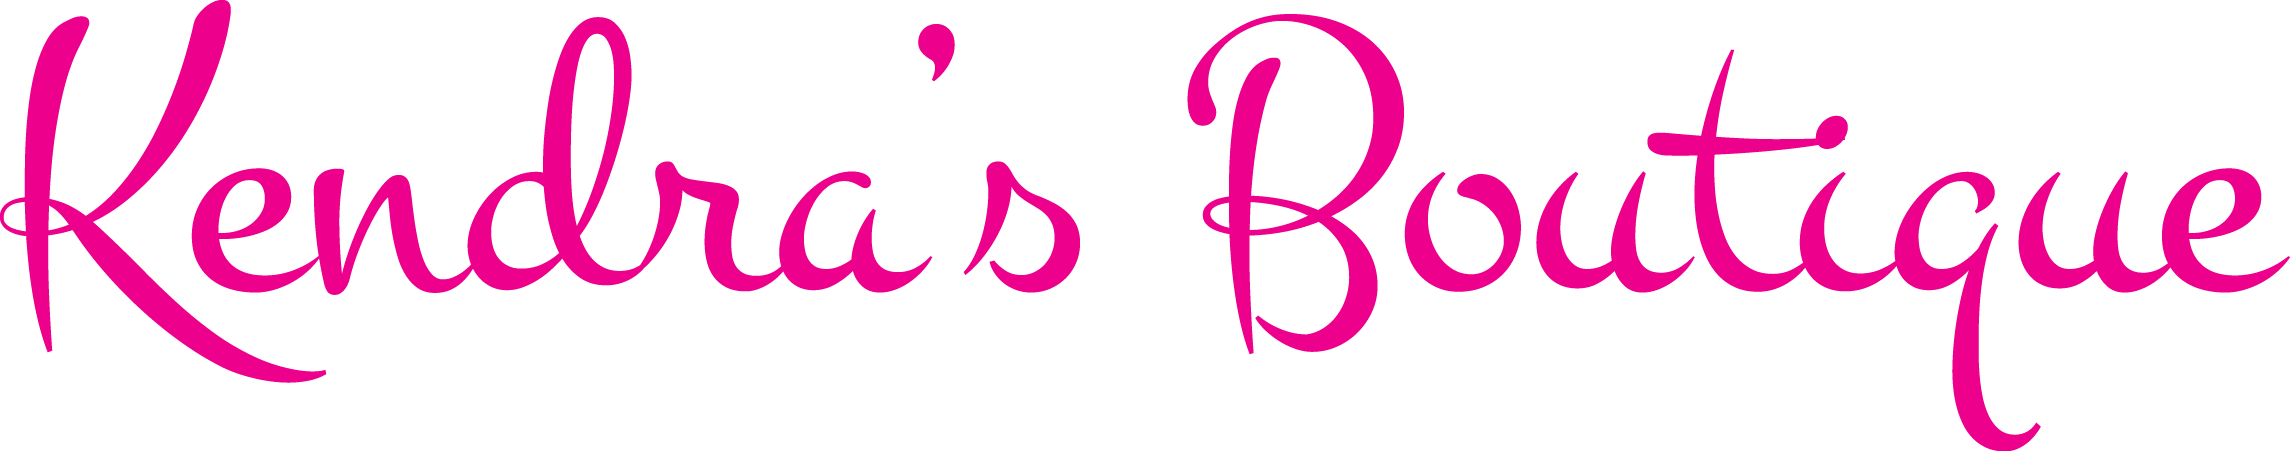 Logo Lace band – Kendras-Boutique1